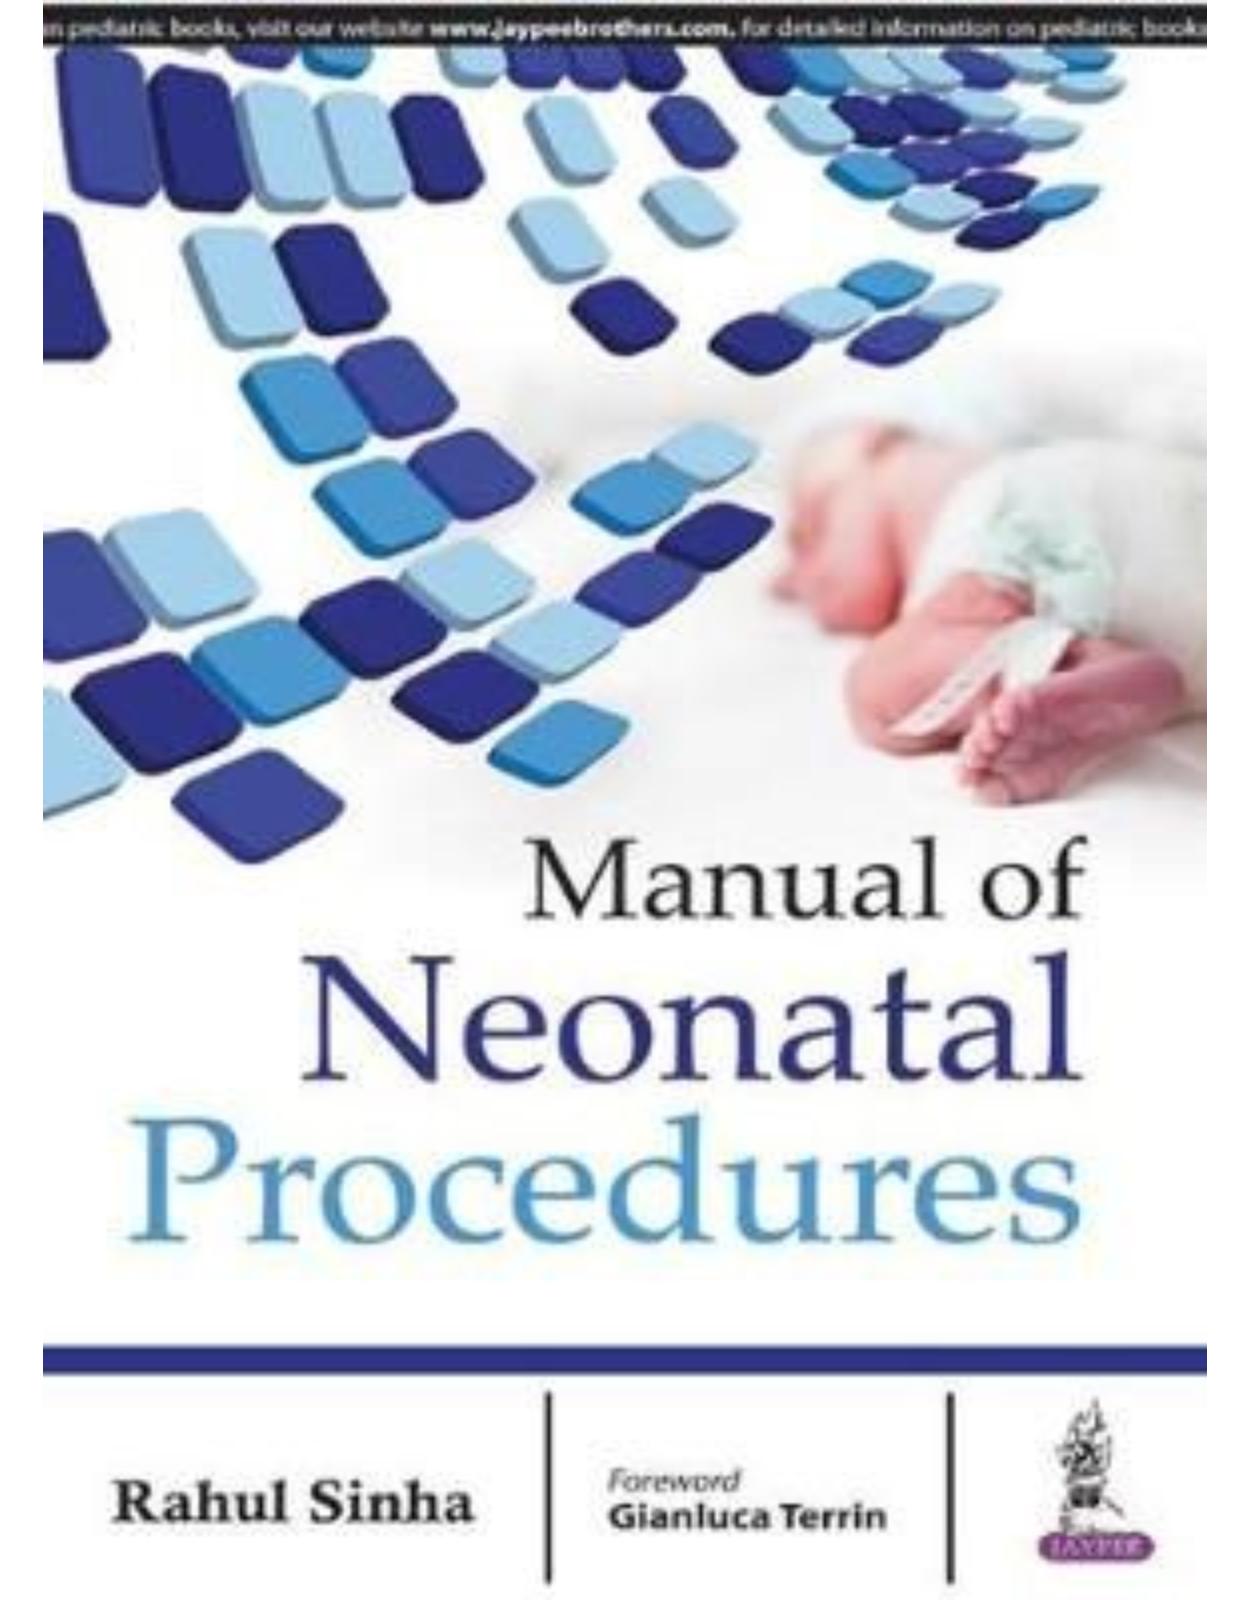 Manual of Neonatal Procedures